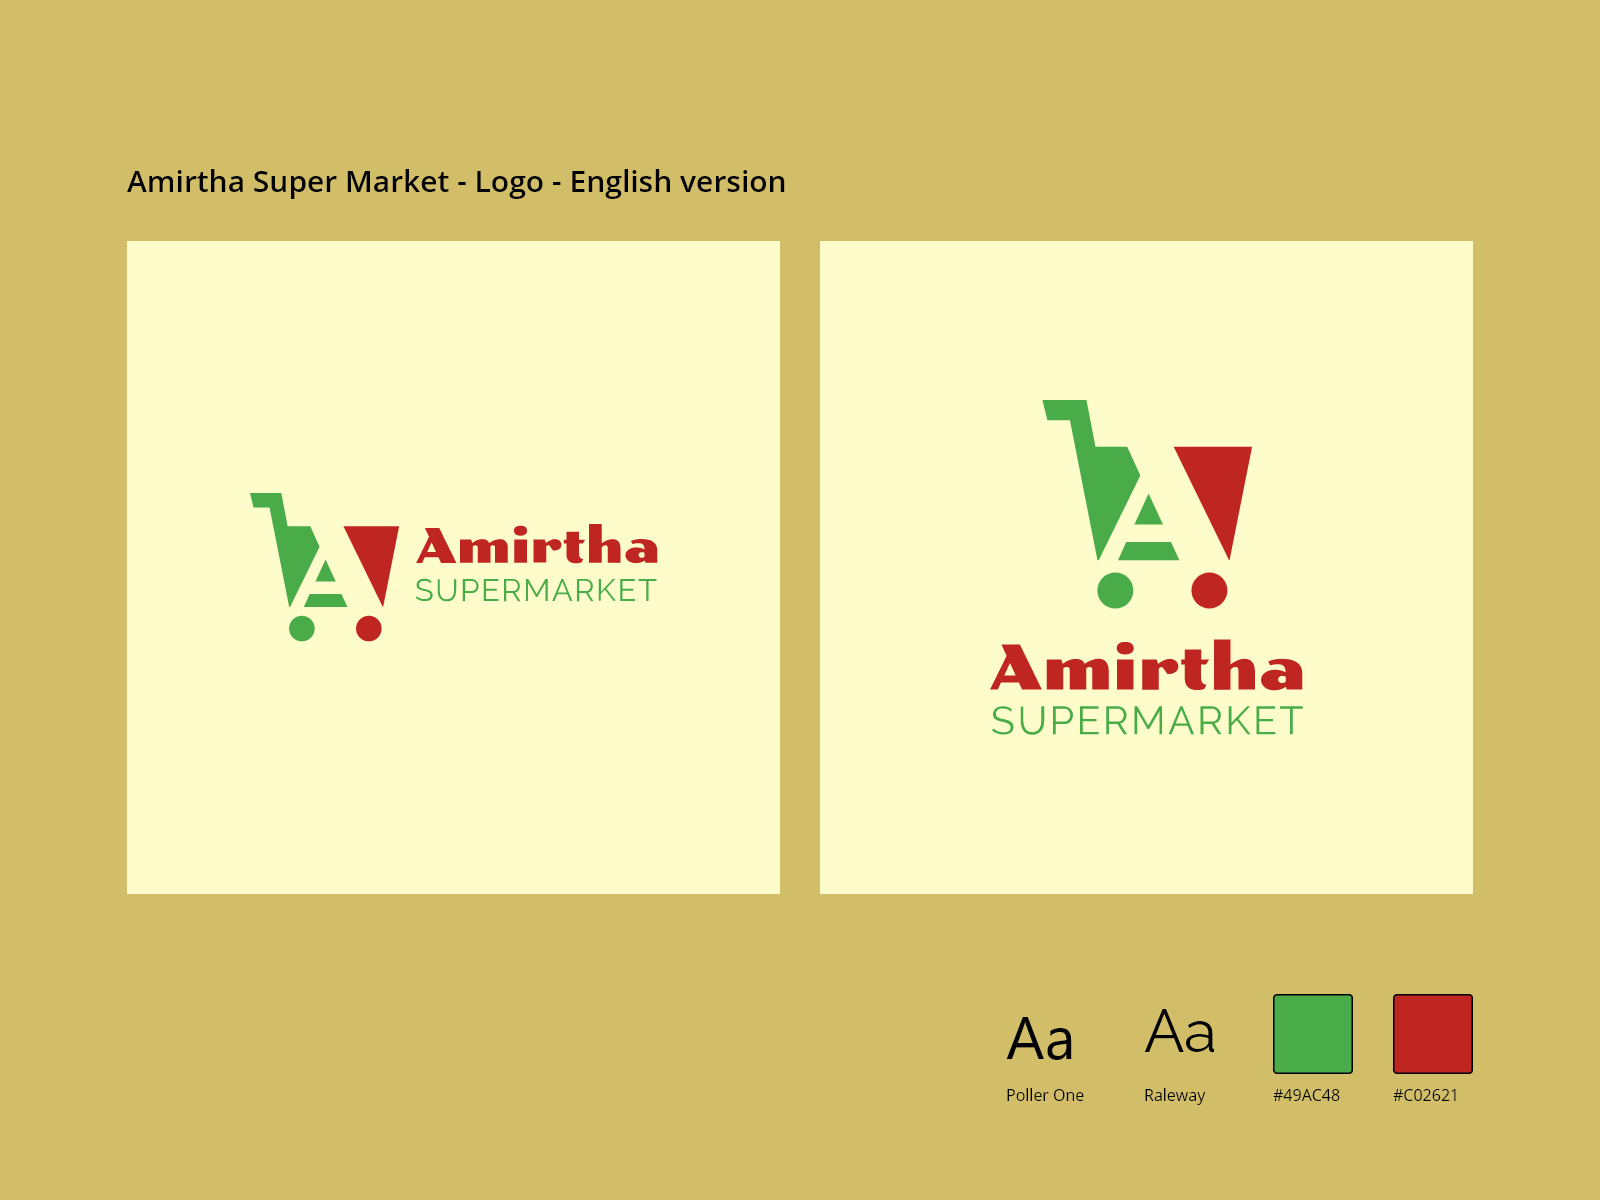 Amirtha supermarket logo by Nupix Studio on Dribbble